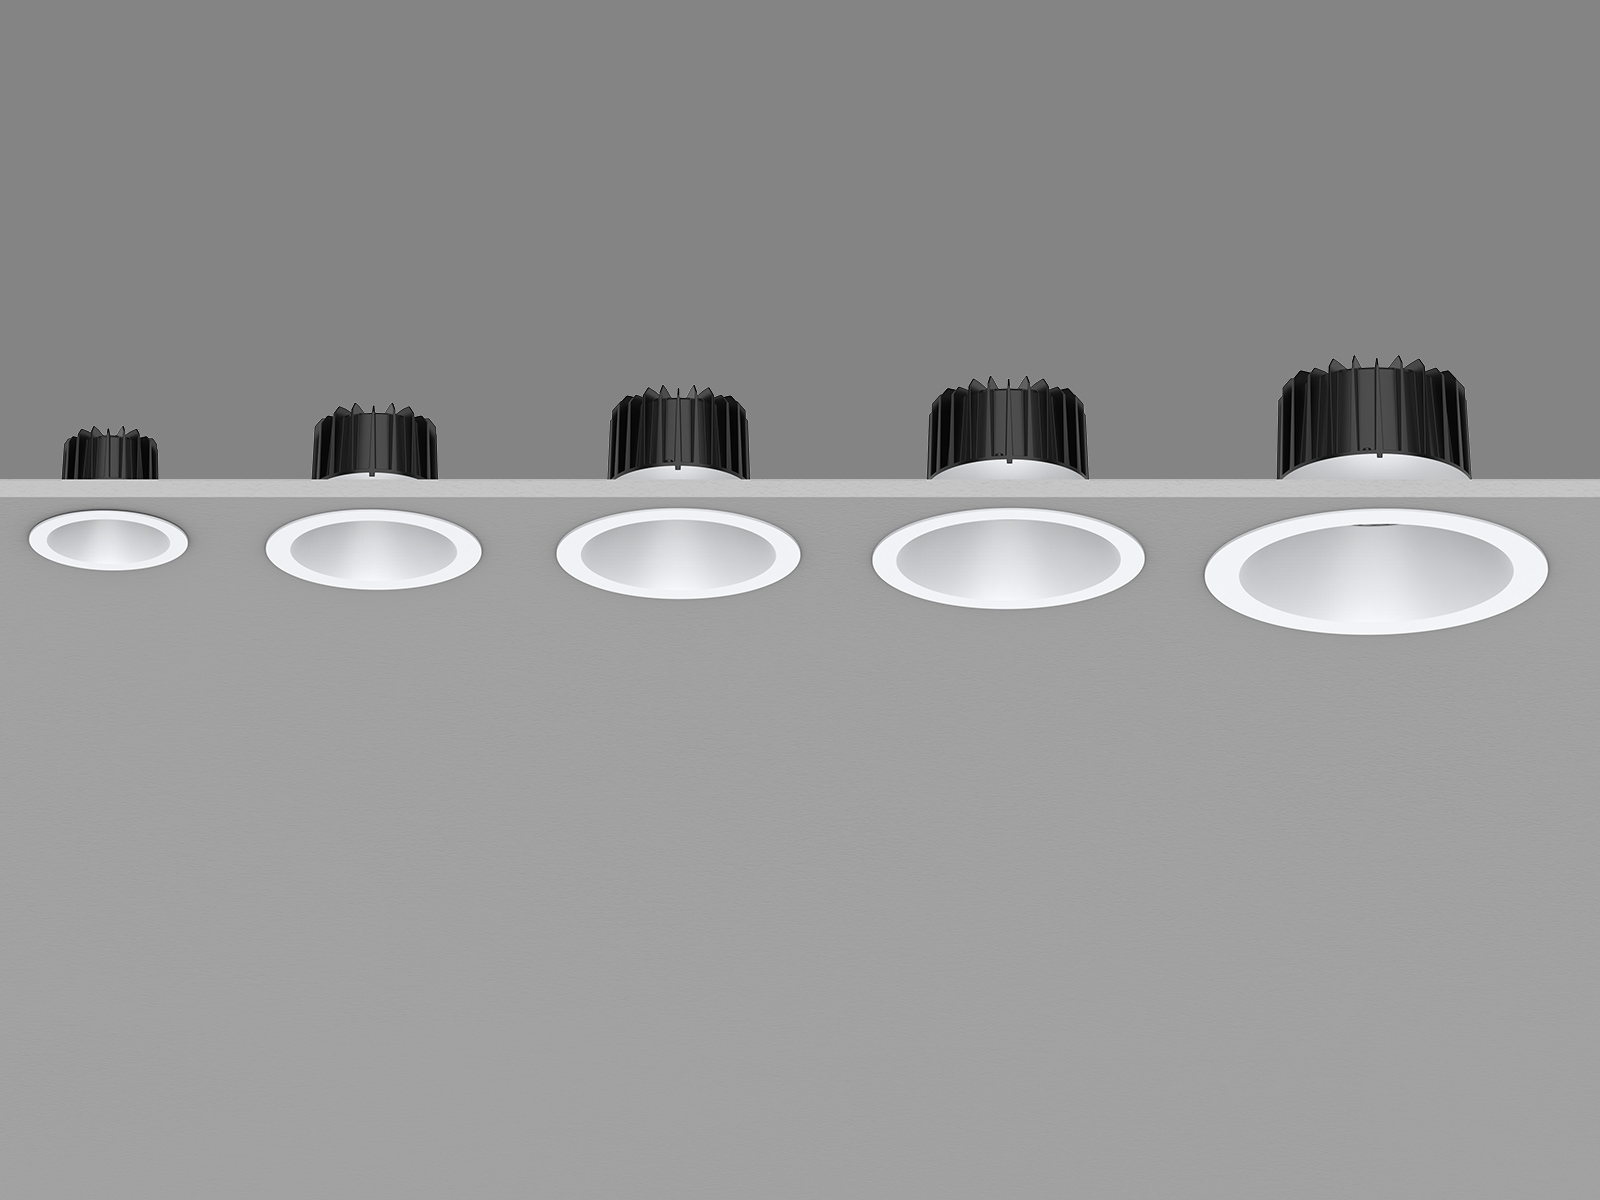 Mini downlight encastrable LED 5W 30º CRI 90 faible UGR